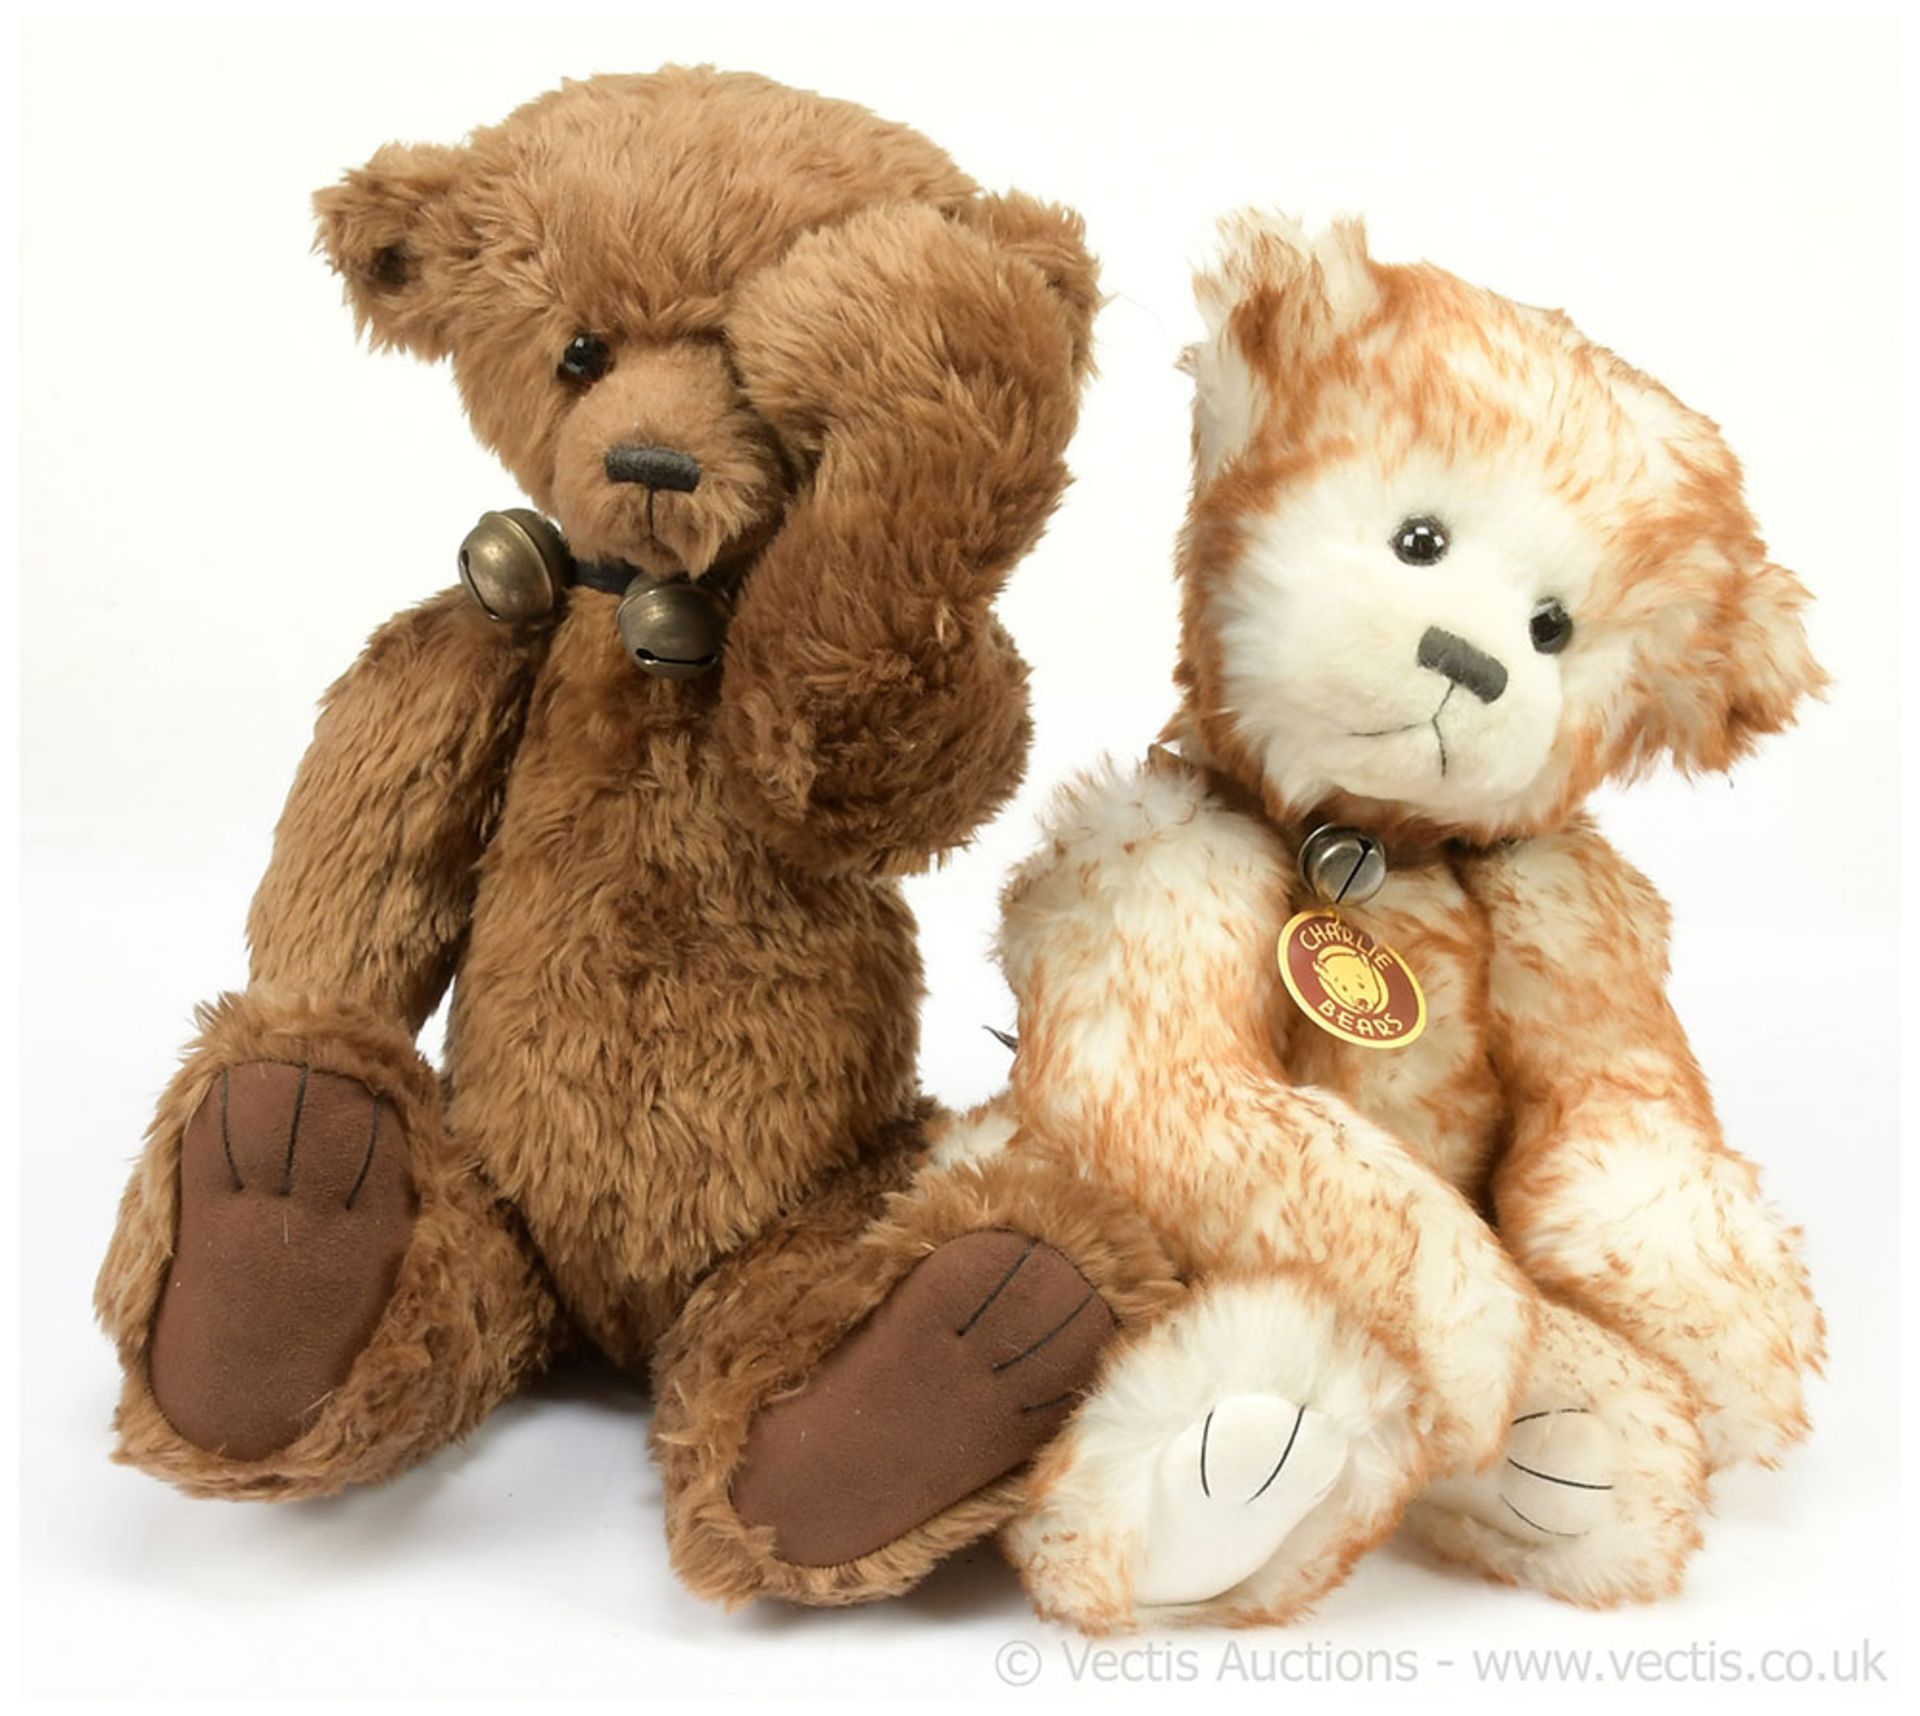 PAIR inc Charlie Bears magnet teddy bears, these